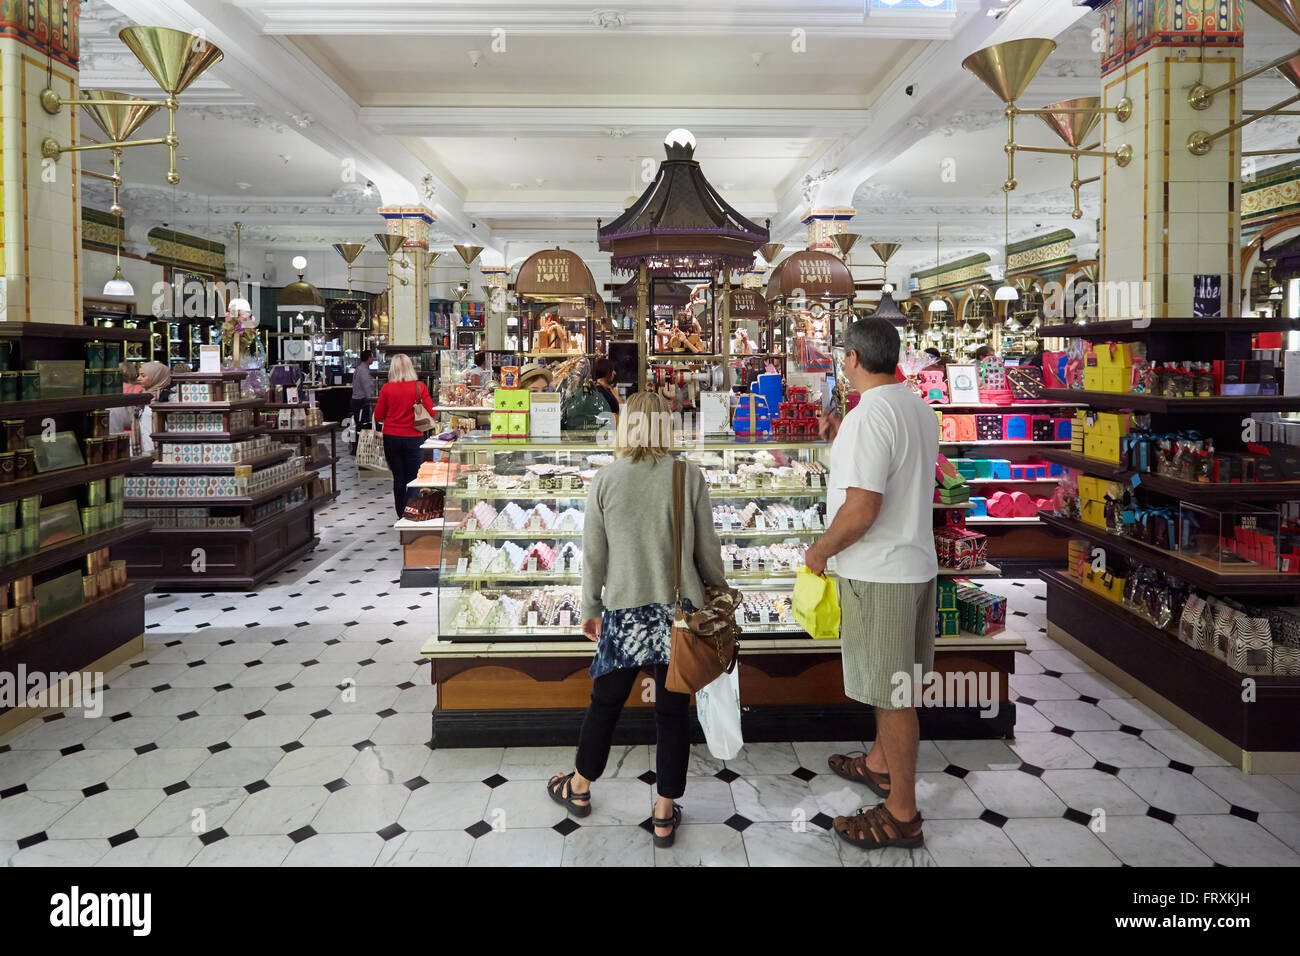 El interior de la tienda Harrods, caramelos y dulces área en Londres Foto de stock